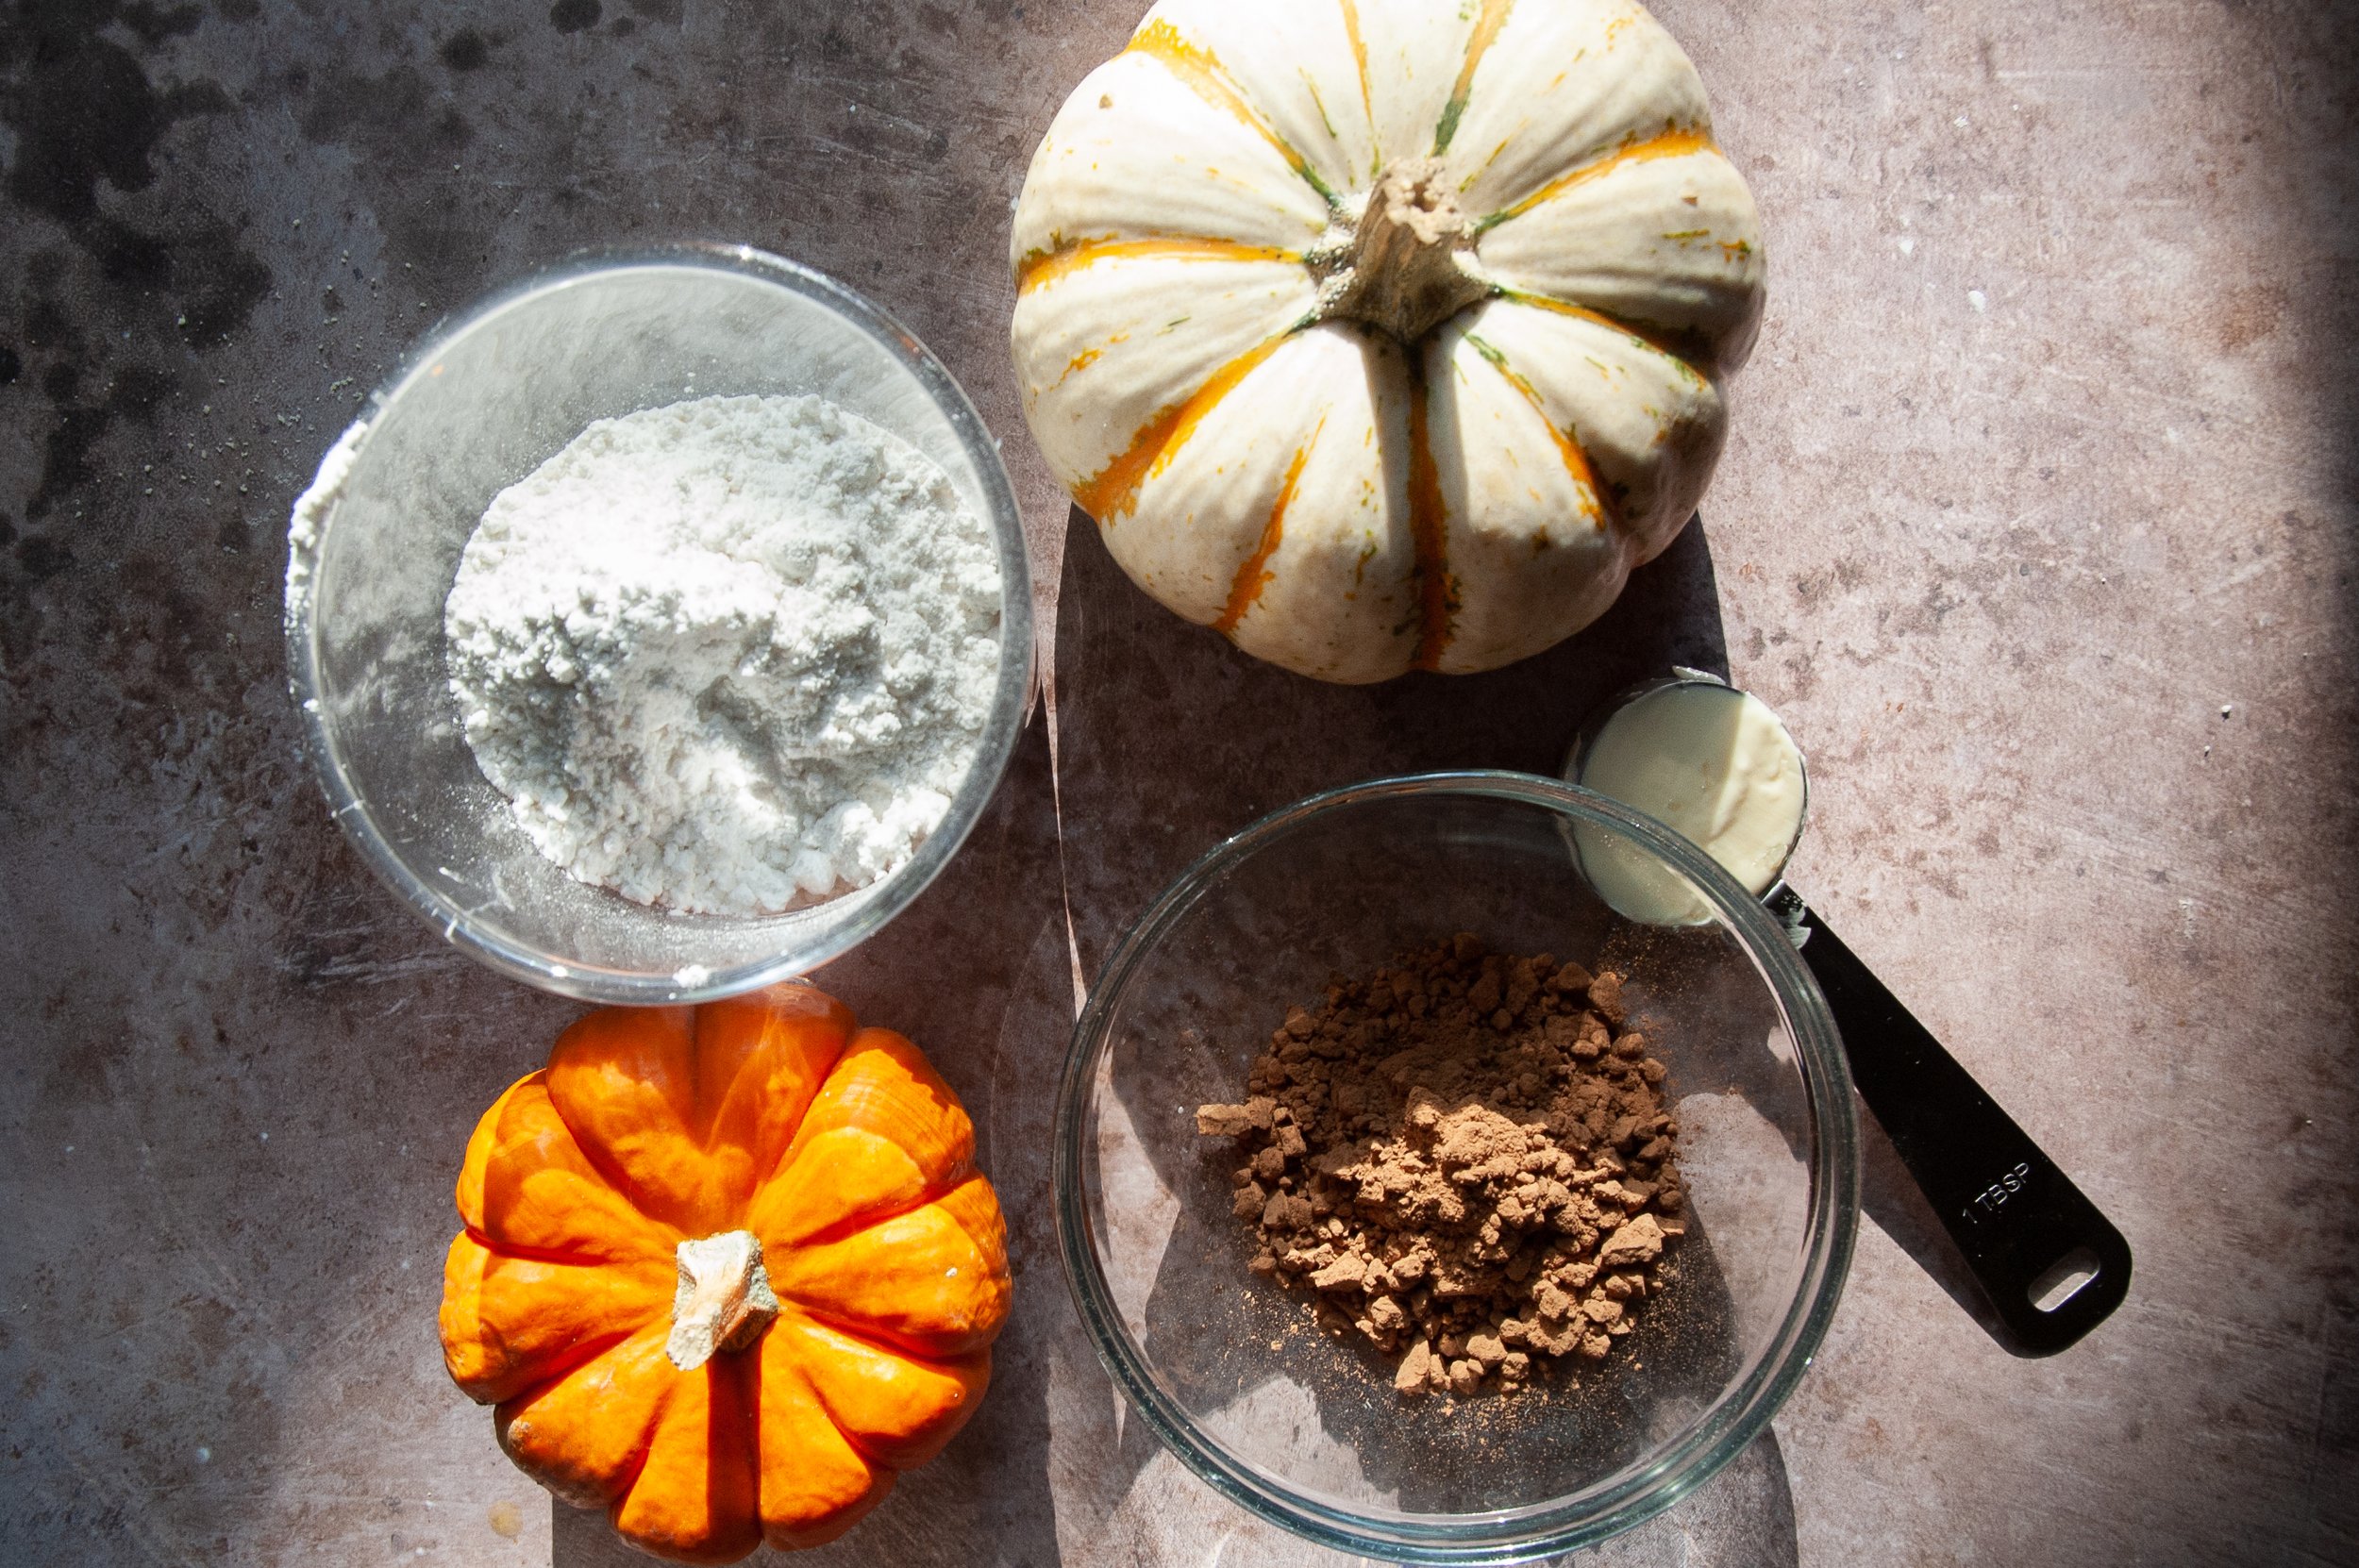 Ingredients for Gluten-Free Pumpkin Donuts